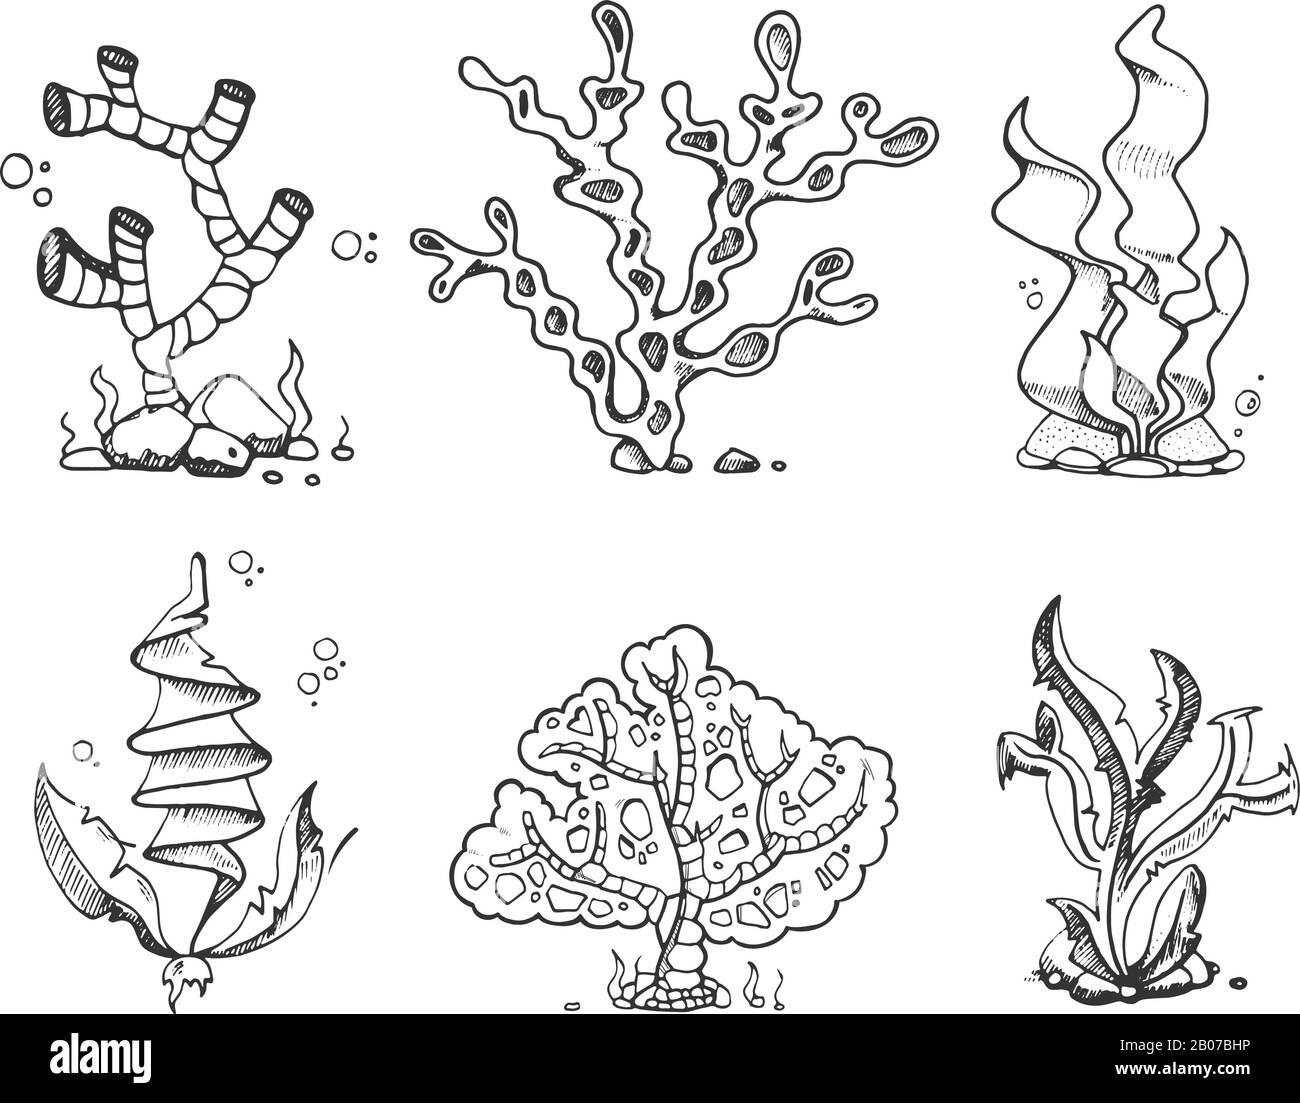 Alghe marine, flora marina, piante oceaniche in vintage disegnato a mano, doodle, vettore di stock in stile schizzo. Corallo e kelp per l'illustrazione dell'acquario, del sottomarino e dell'organismo subacqueo Illustrazione Vettoriale